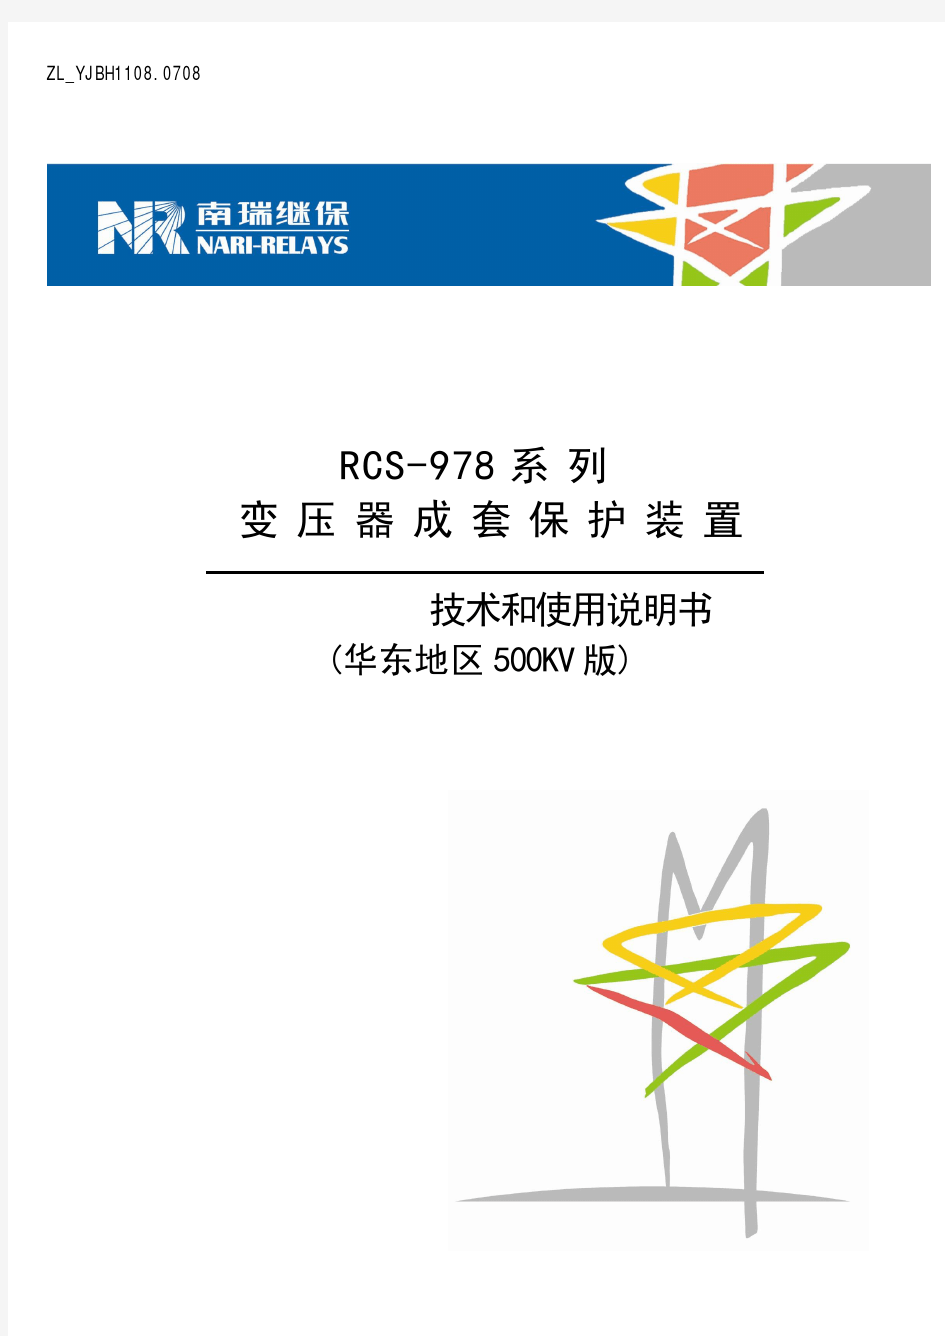 RCS-978系列变压器成套保护装置技术和使用说明书华东地区500KV版